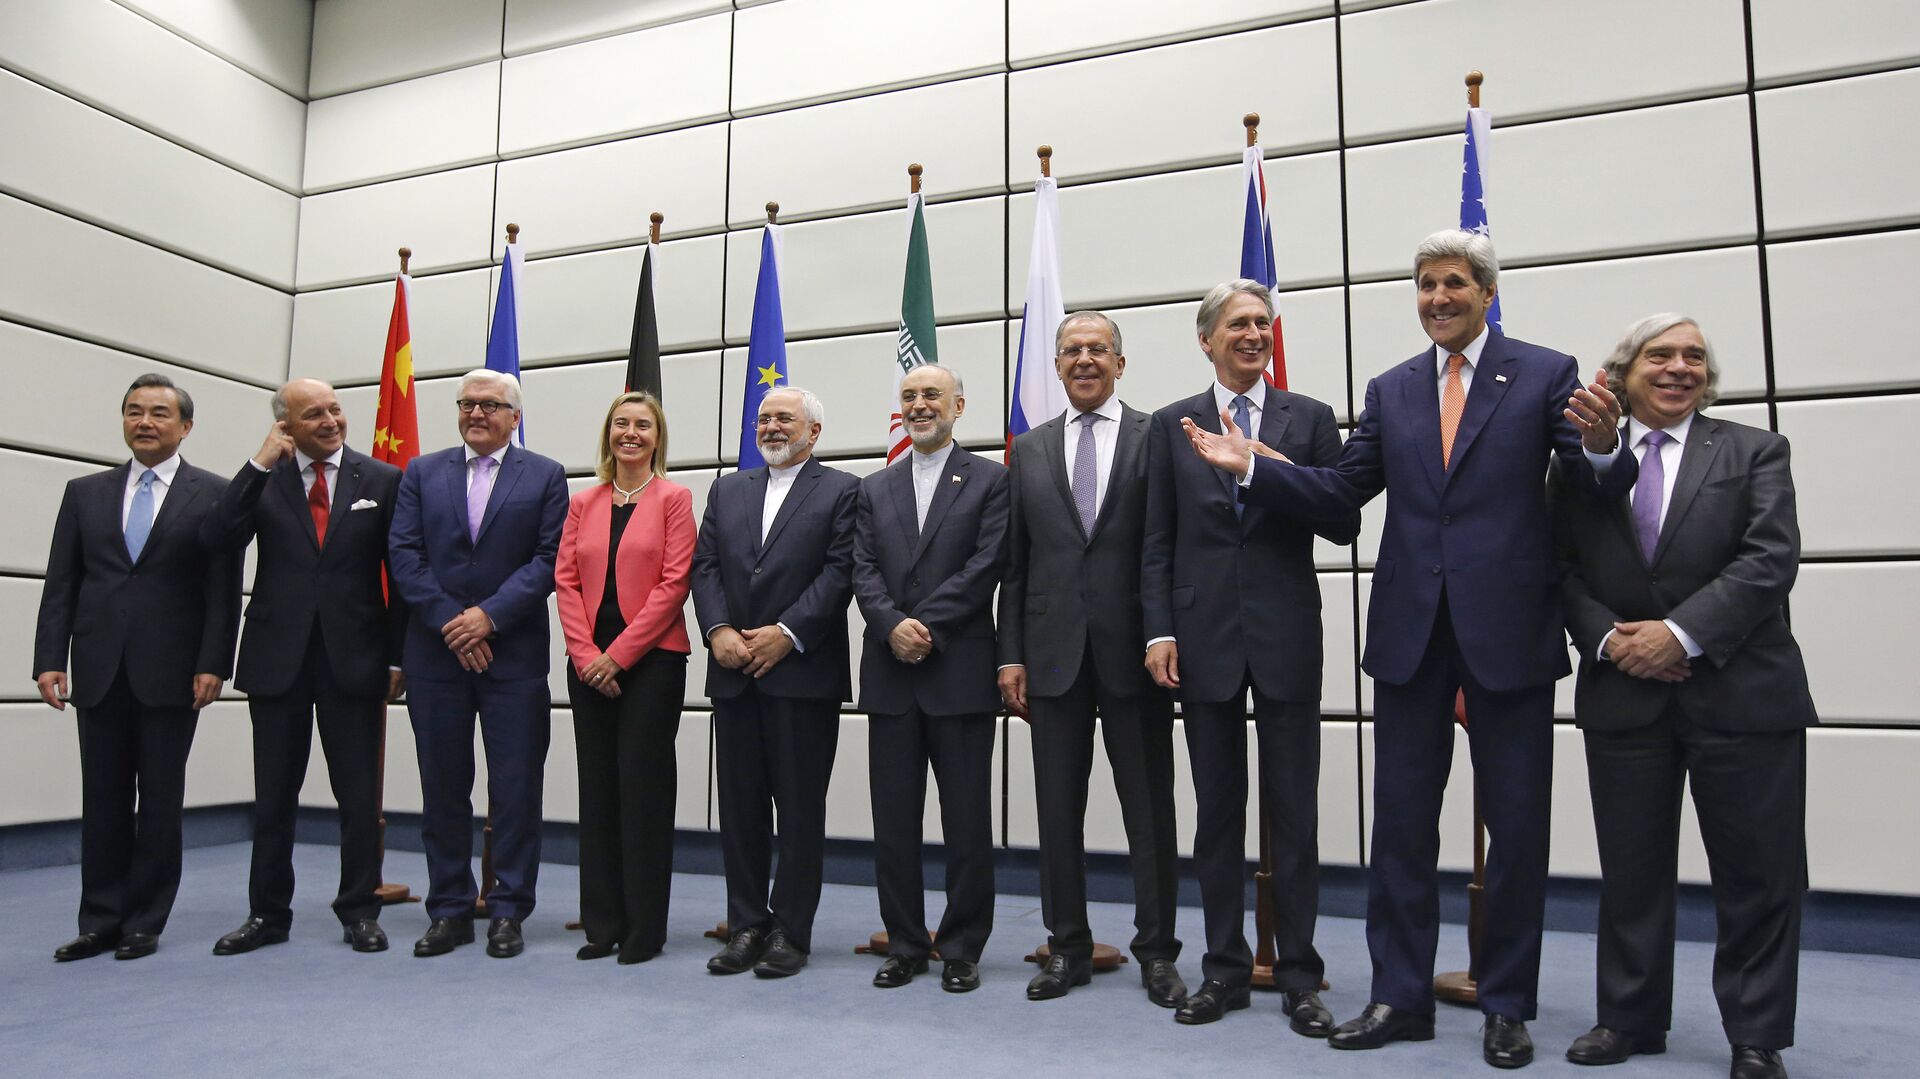 El Plan Integral de Acción Conjunta fue firmado en Viena el 14 de julio de 2015 entre Irán y el Grupo 5+1, compuesto por los cinco miembros permanentes del Consejo de Seguridad de la ONU—China, Francia, Rusia, Reino Unido, Estados Unidos— más Alemania. - Sputnik Mundo, 1920, 28.11.2021